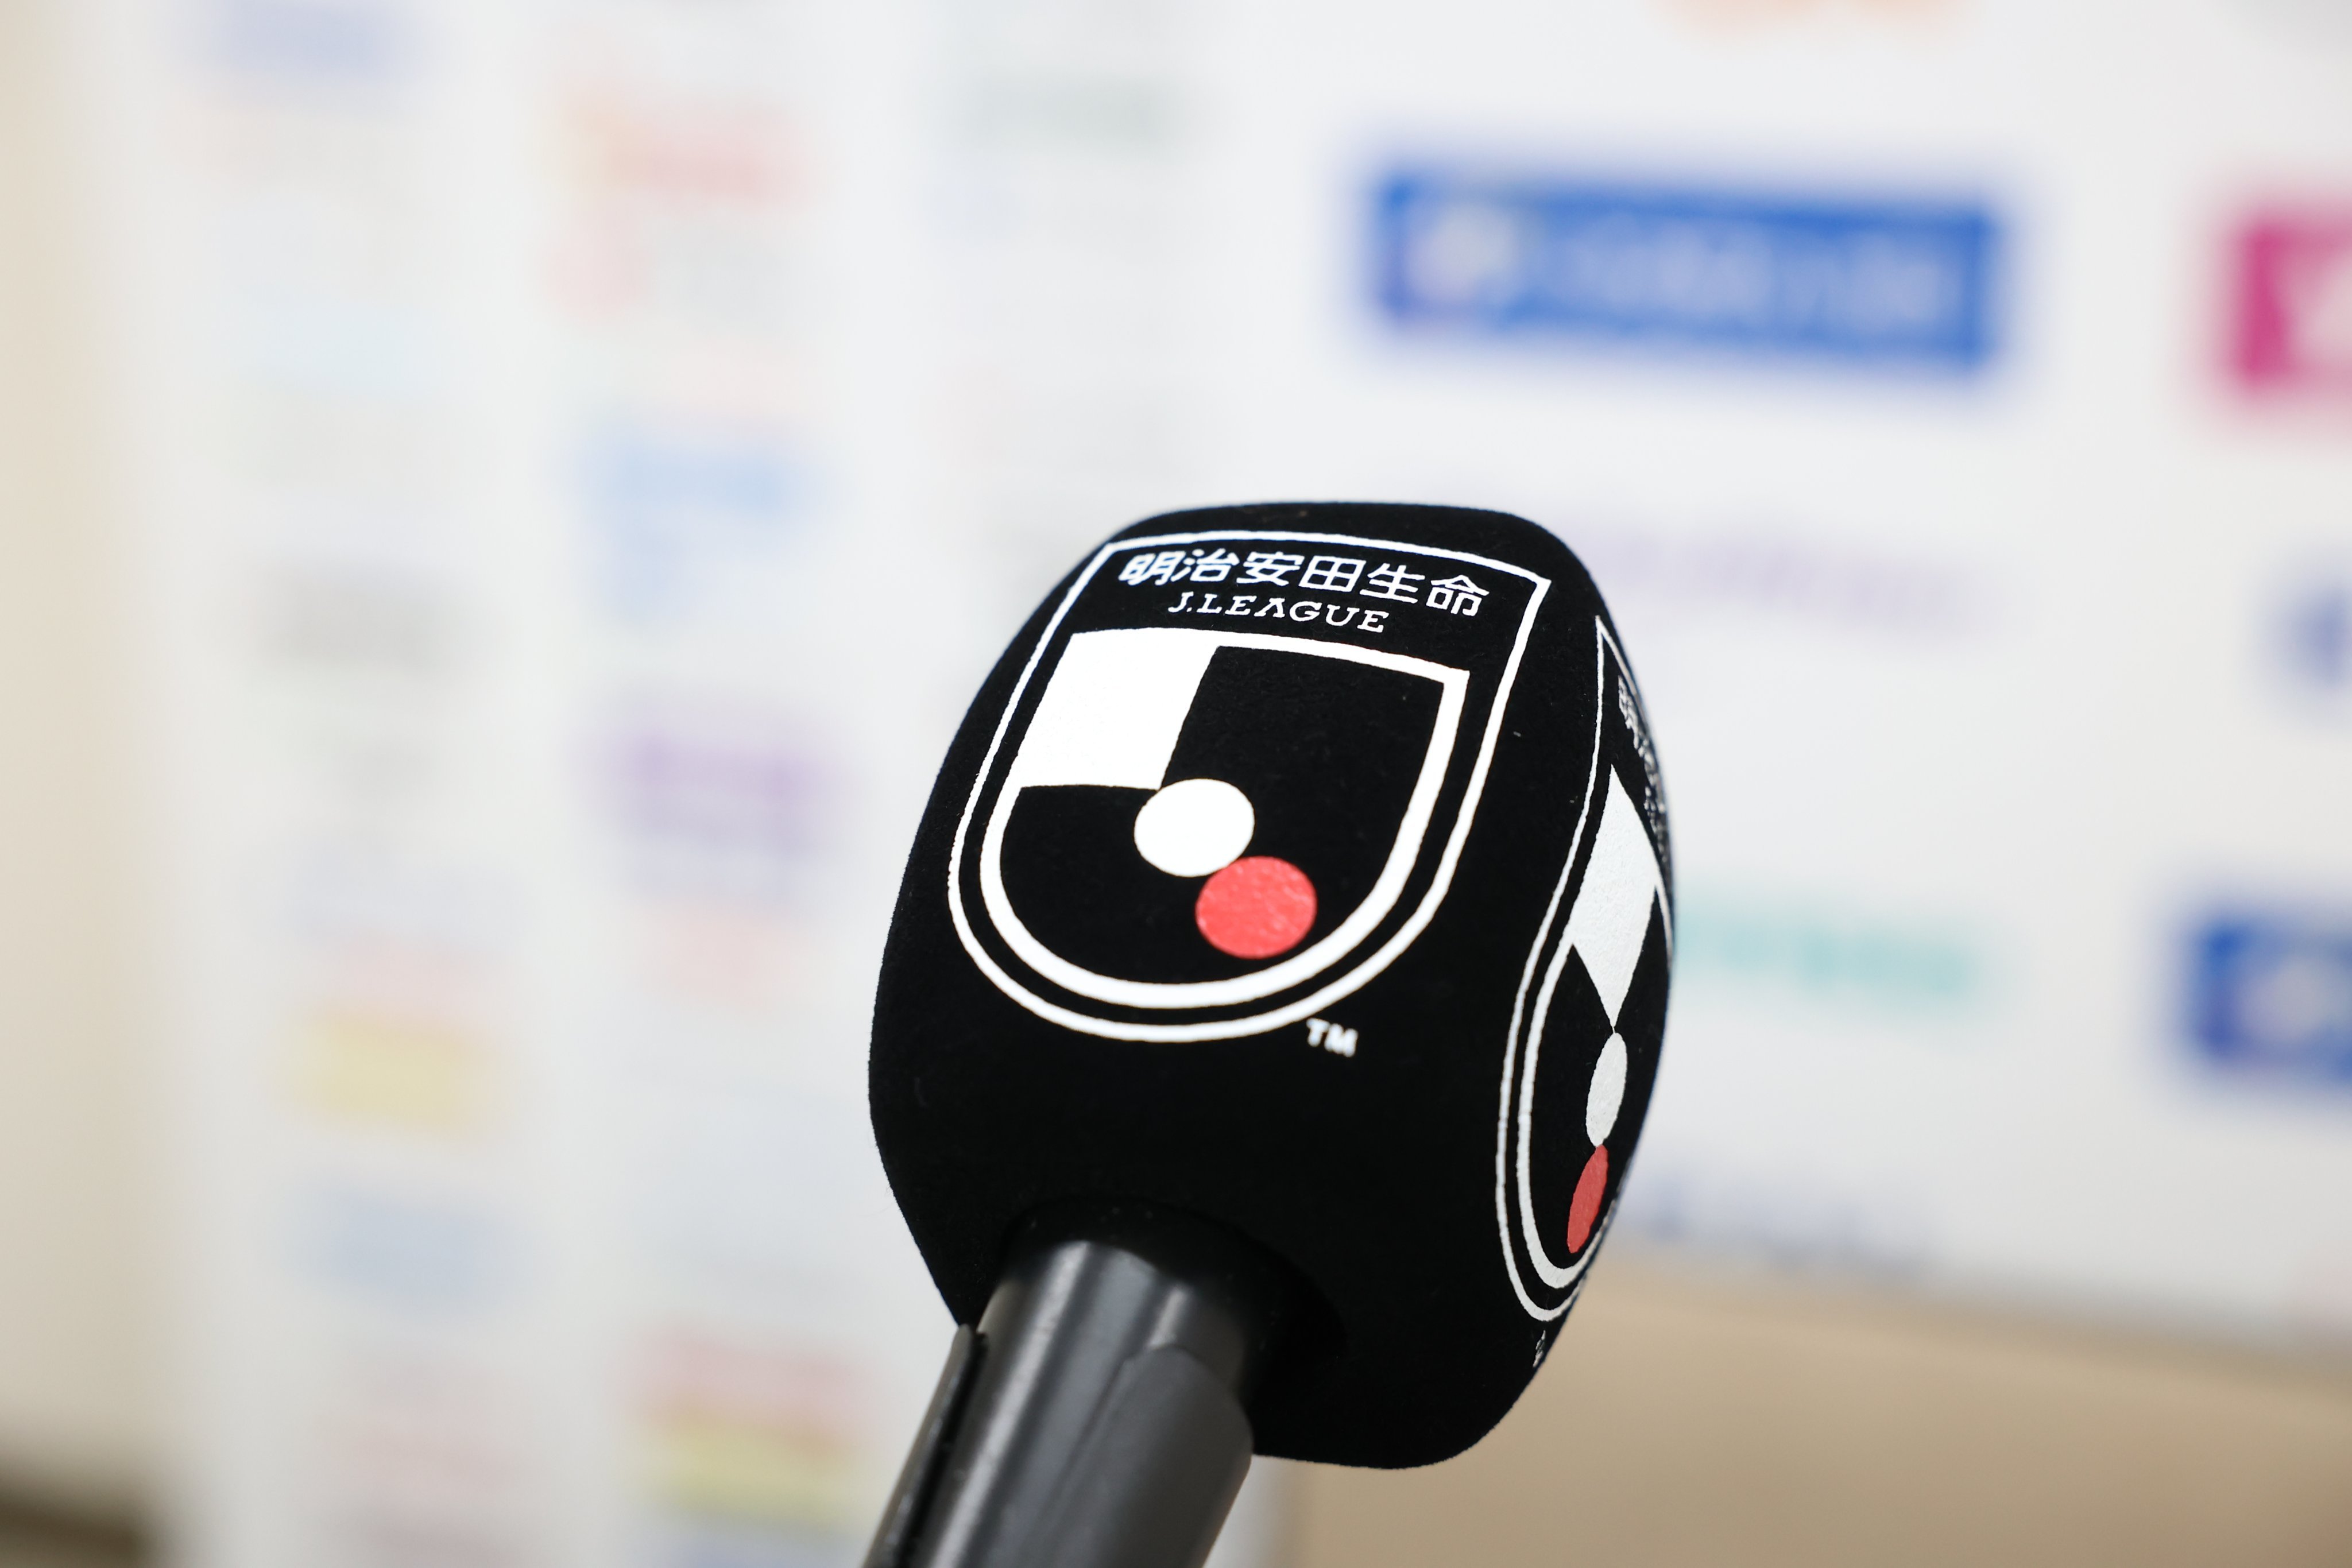 Jadwal Siaran Langsung J1 League Pekan Ke-11